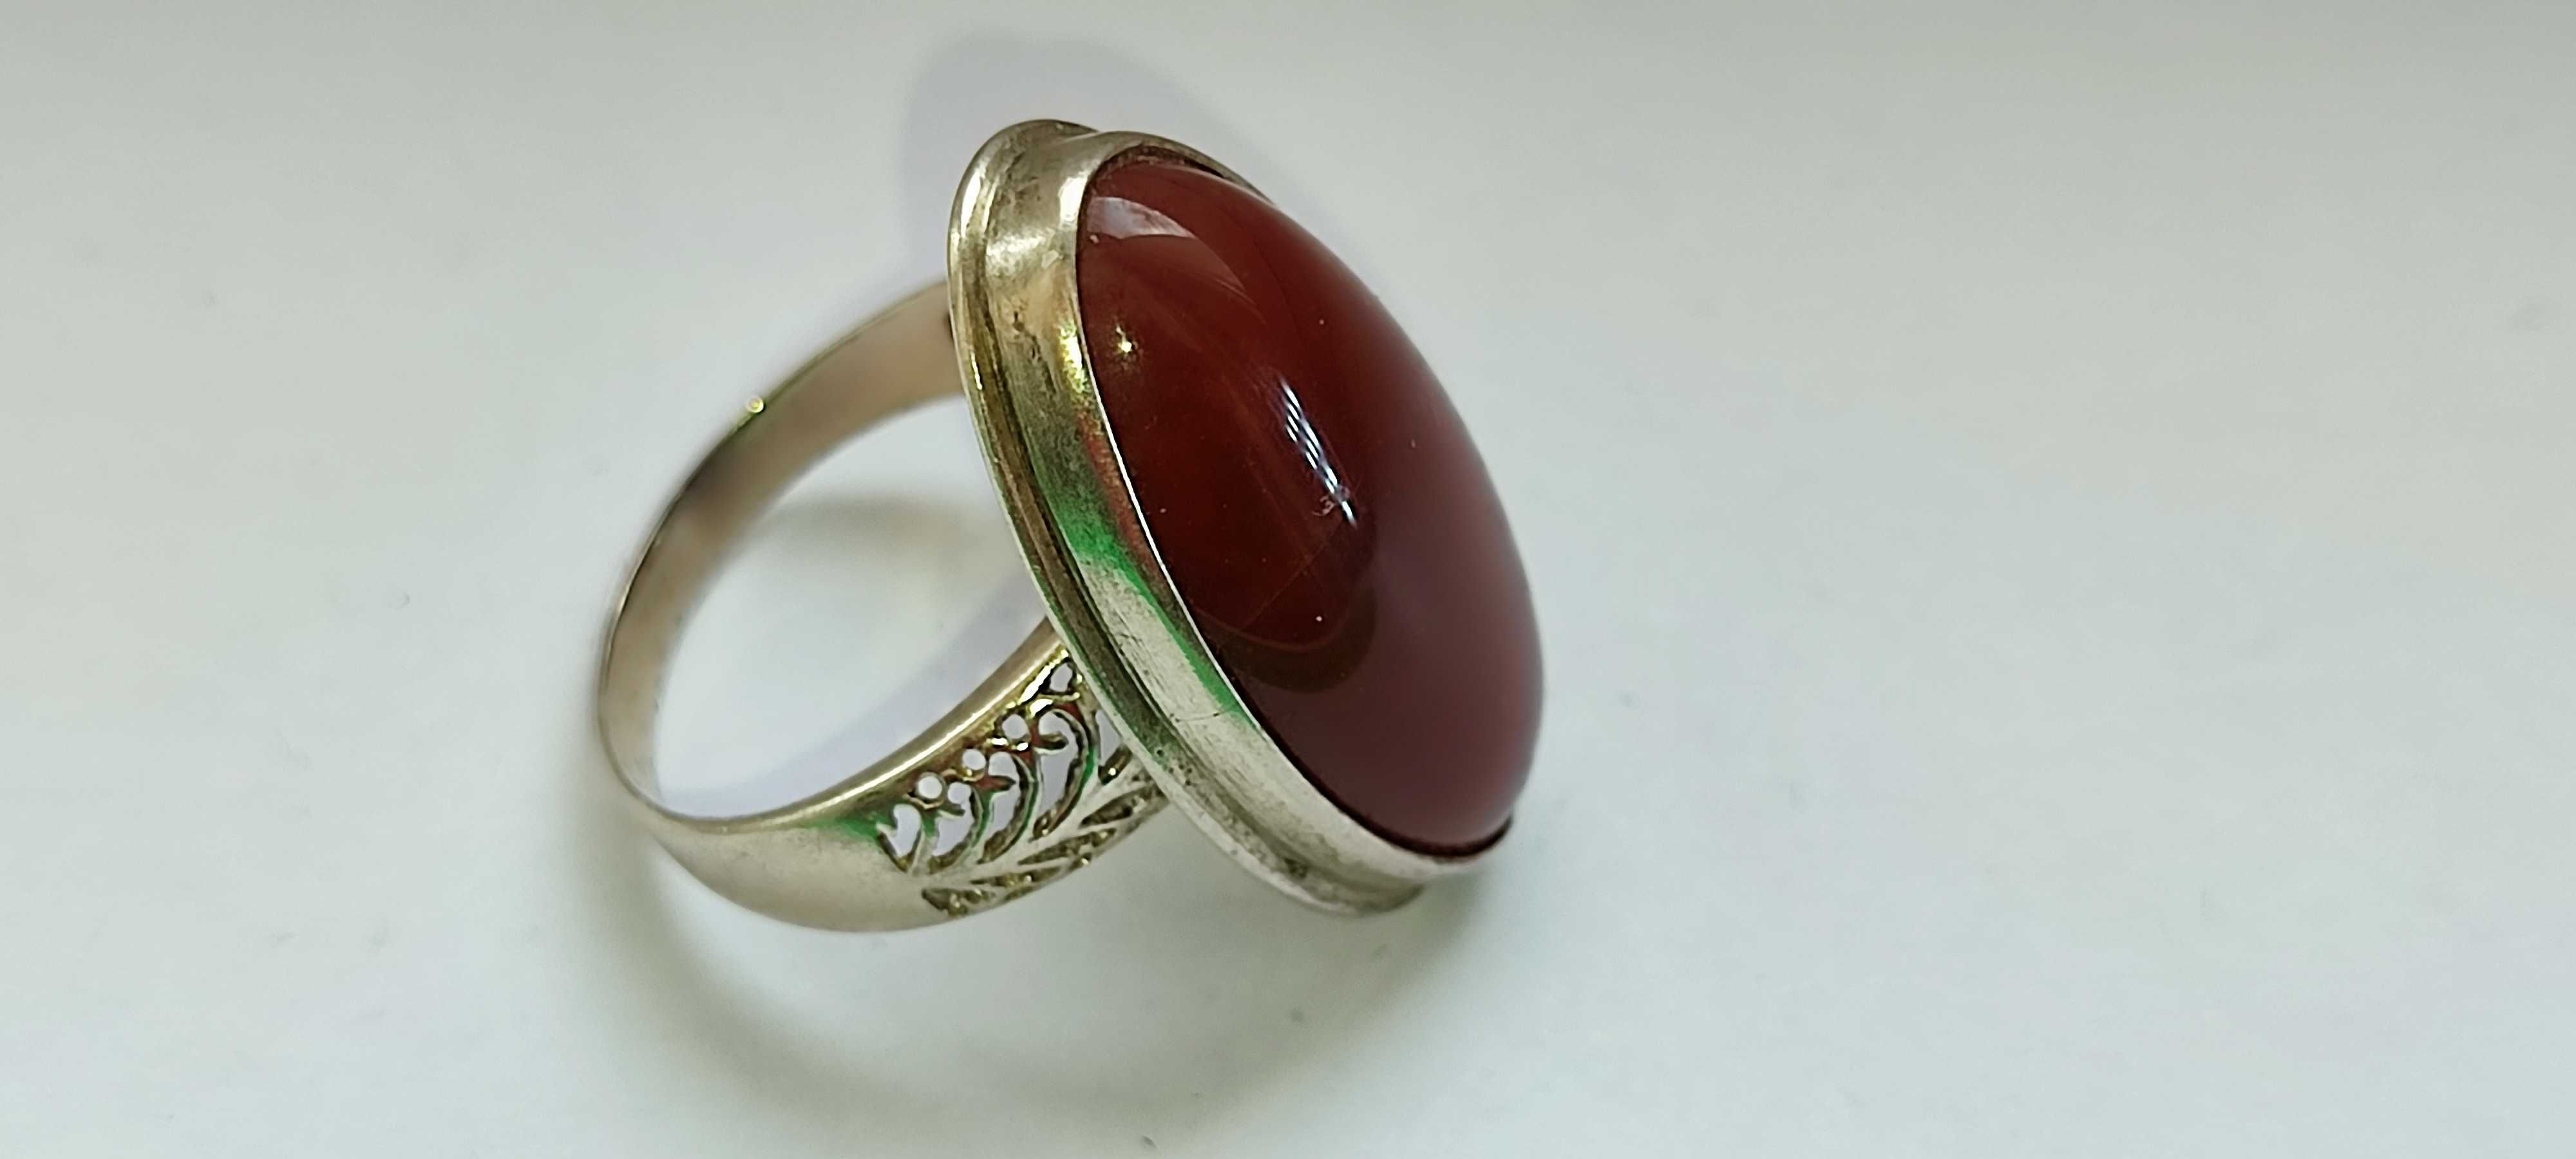 Красивое оригинальное серебряное кольцо с крупным камнем СЕРДОЛИК